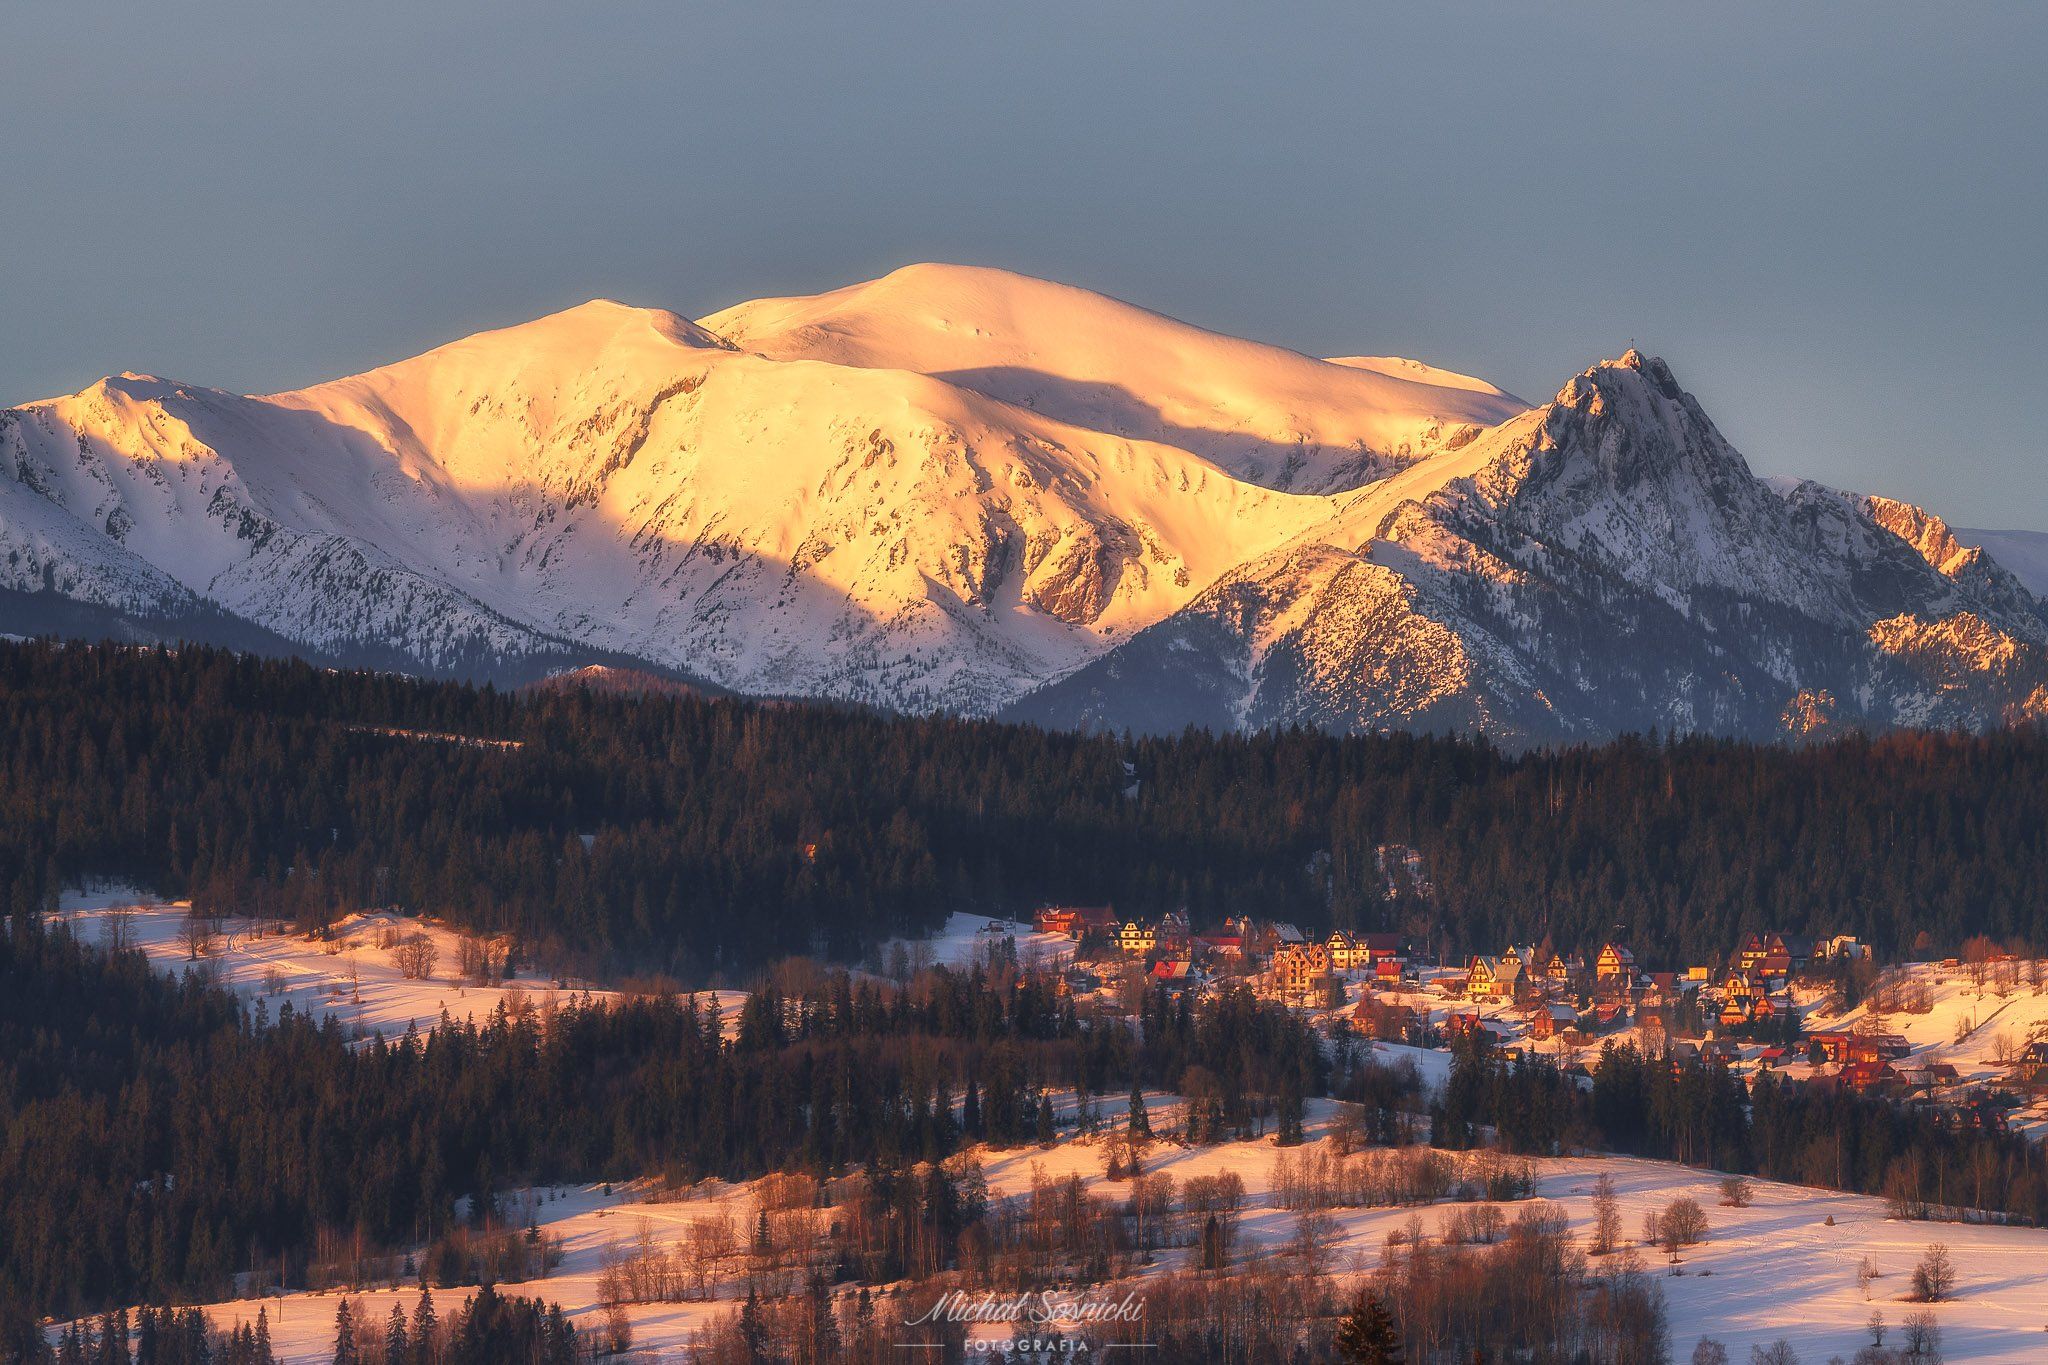 #tatry #tatras #mountains #snow #winter #tree #poland #best #nature #benro #pentax, Michał Sośnicki